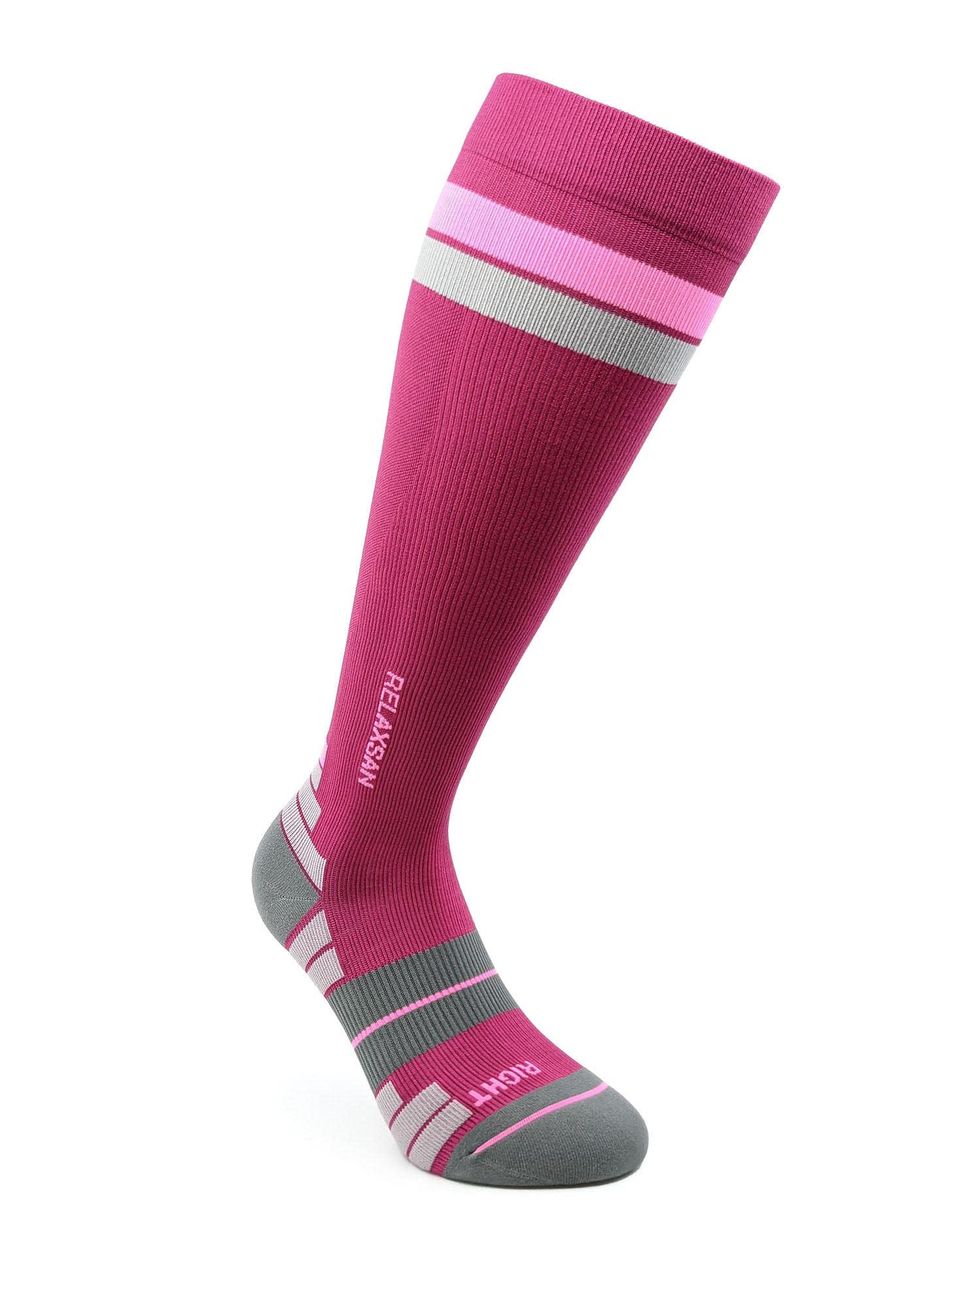 Relaxsan 800 Sport Socks (Fucsia/Rosa, 1S) – Calze sportive compressione graduata Fibra Dryarn massime prestazioni